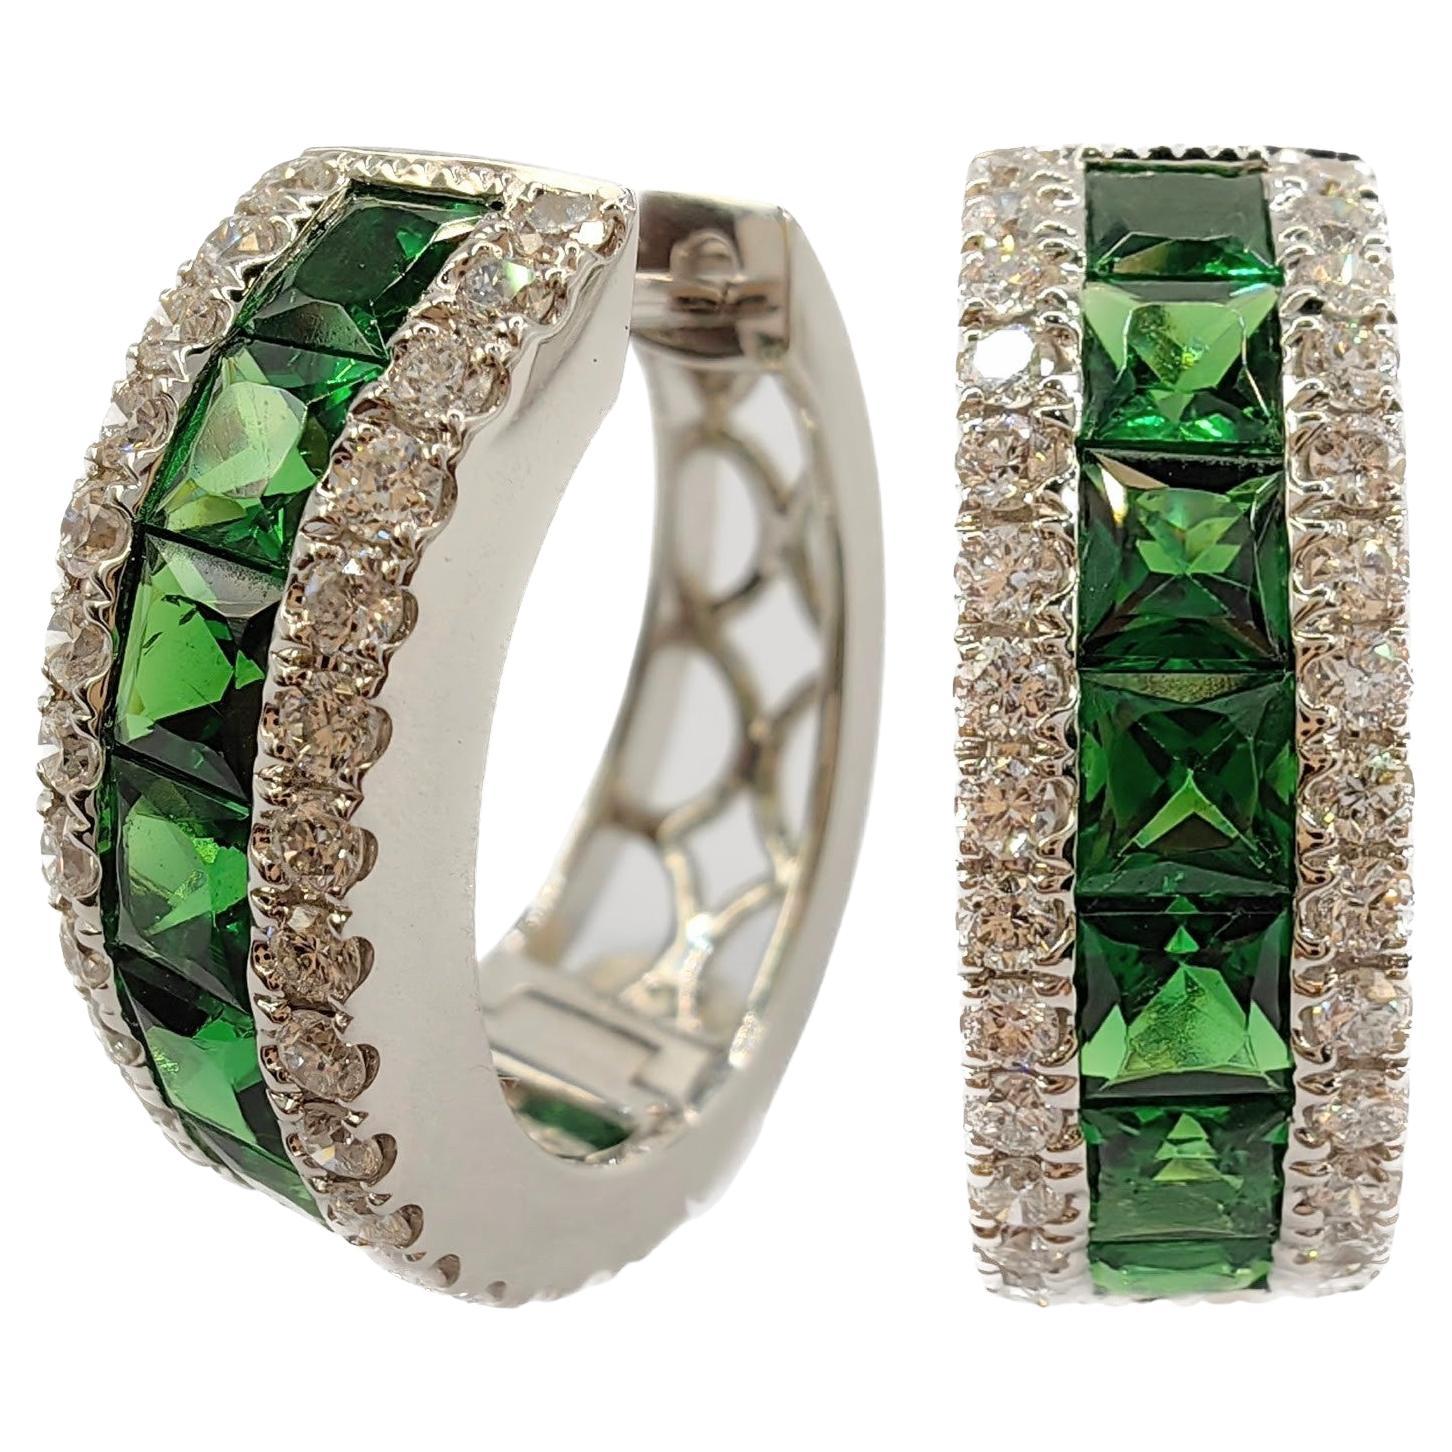 2.6 Carat Deep Green Tsavorite Diamond Huggie Hoop Earrings in 18k White Gold